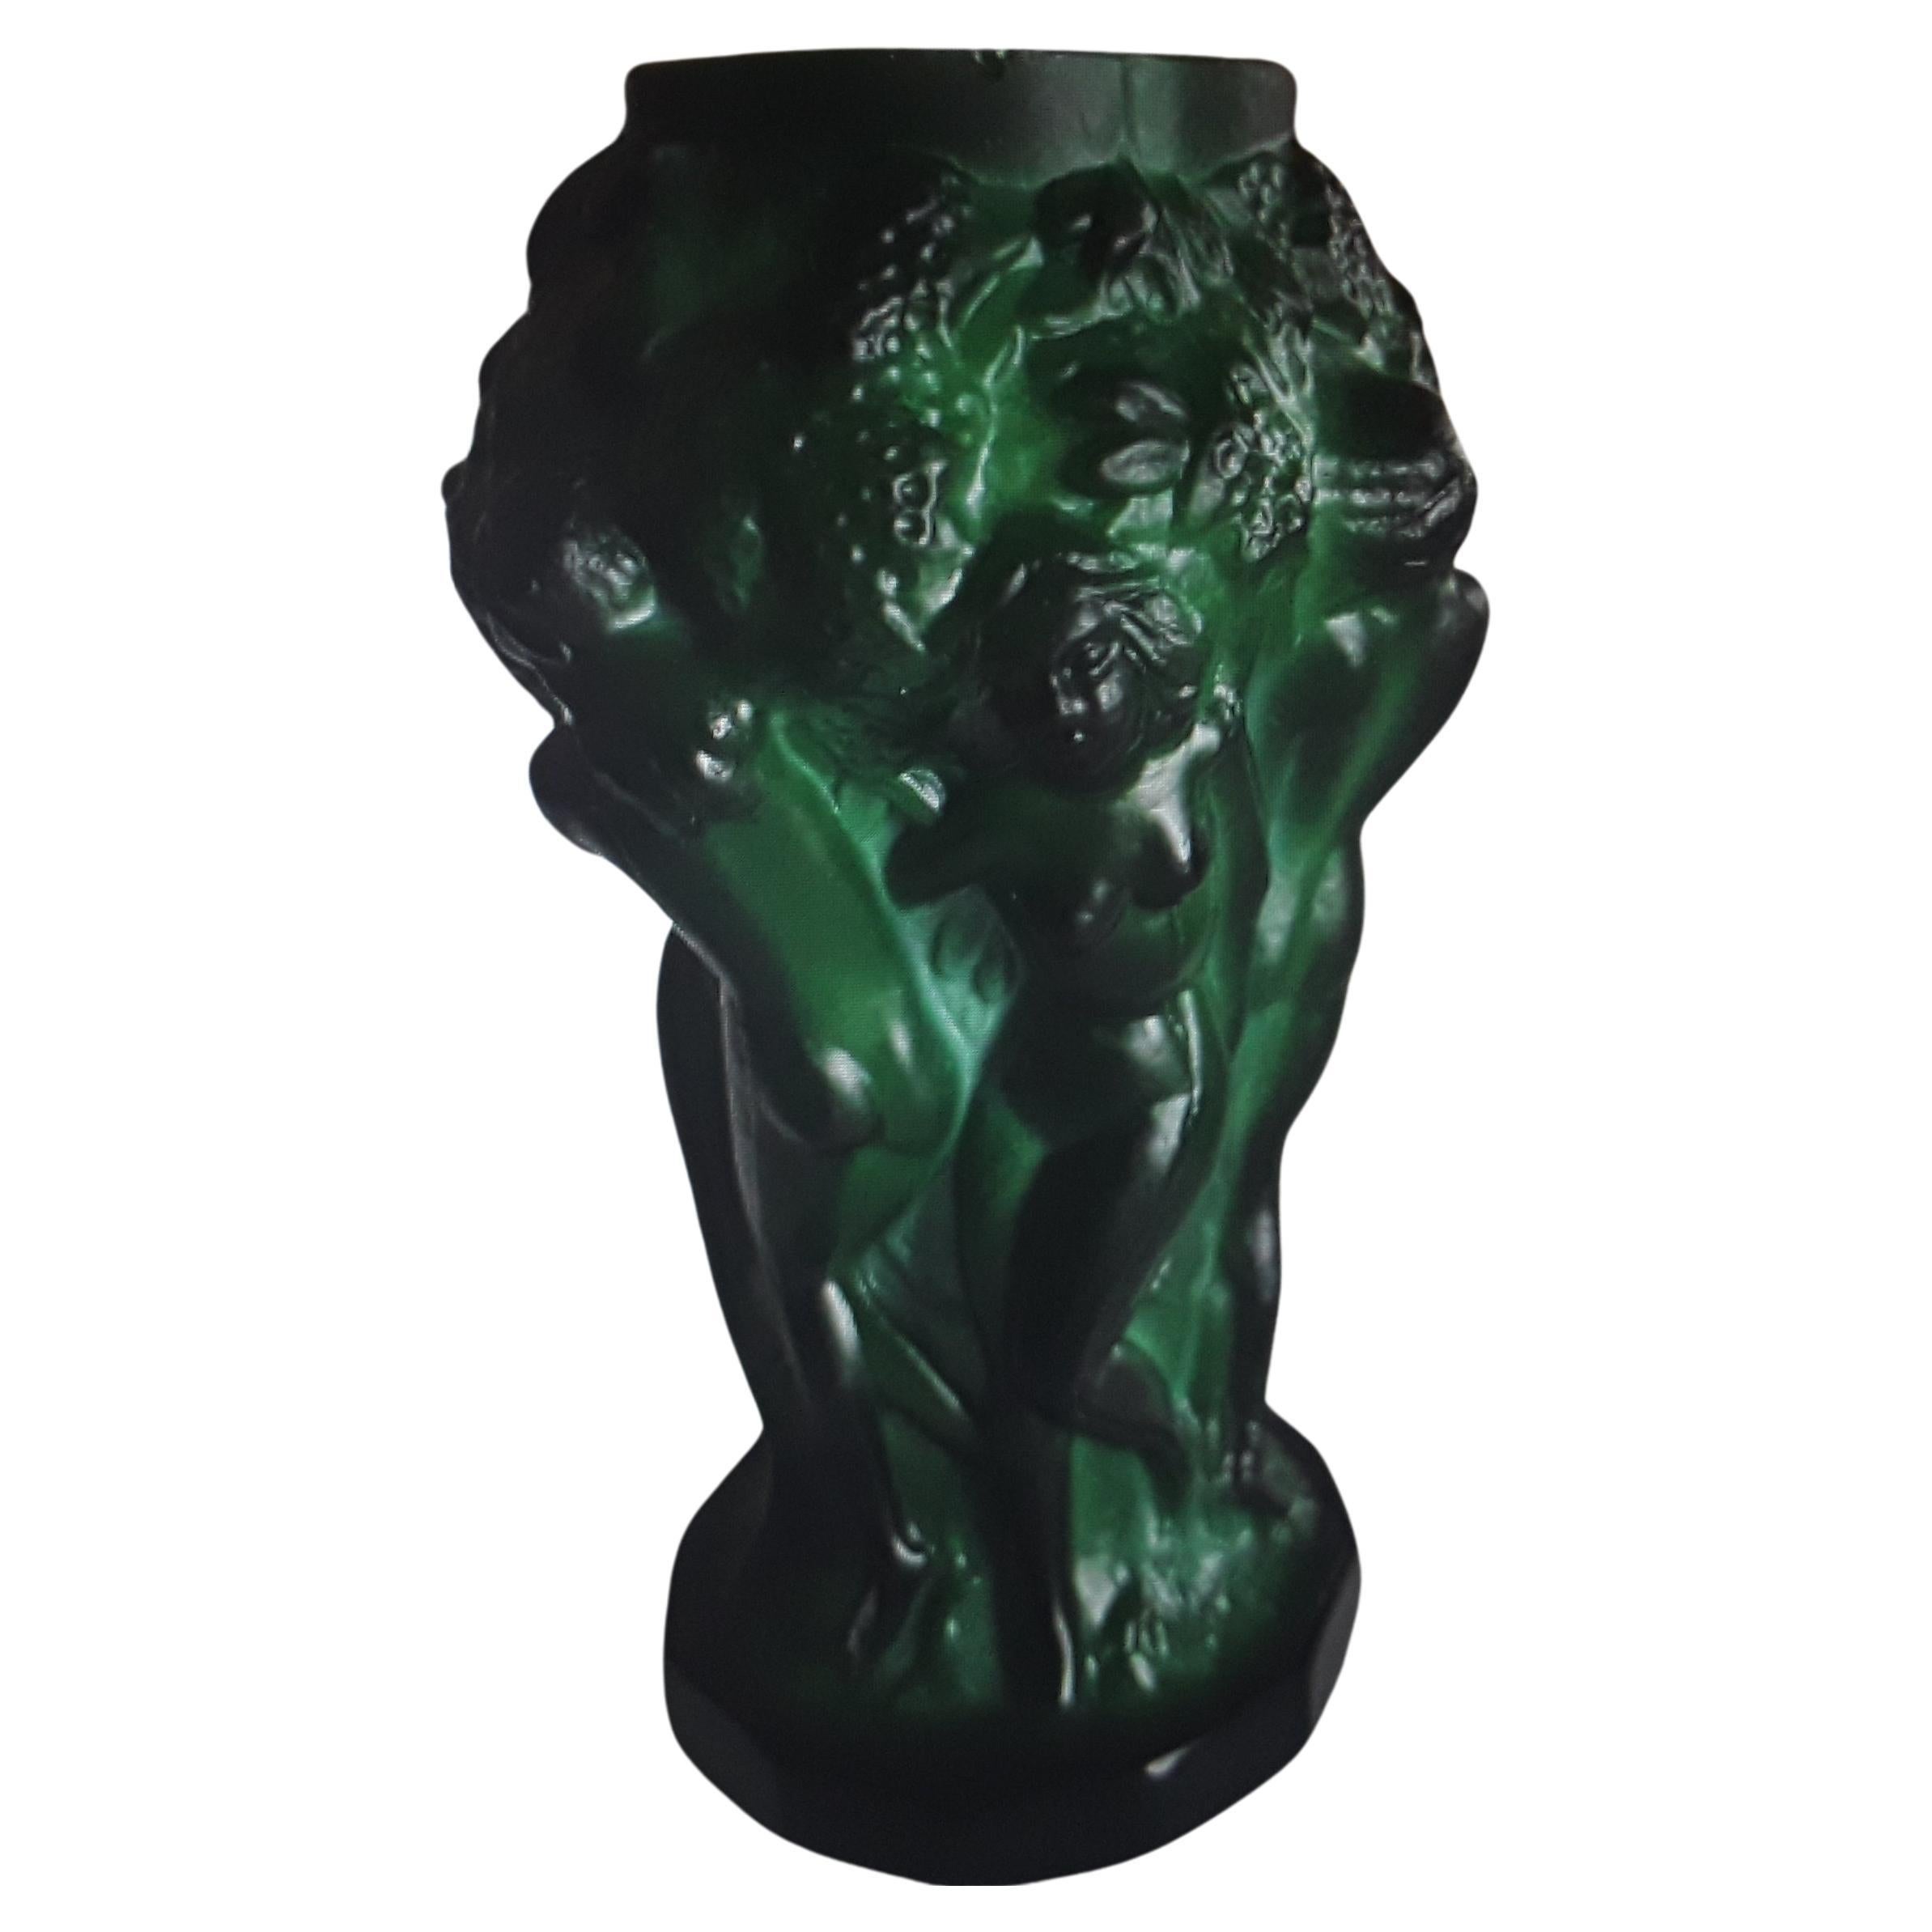 1930's Art Deco Malachit / Jade getönten Kunstglas Figural Vase. Kleine Größe. Wunderschön dargestellt.